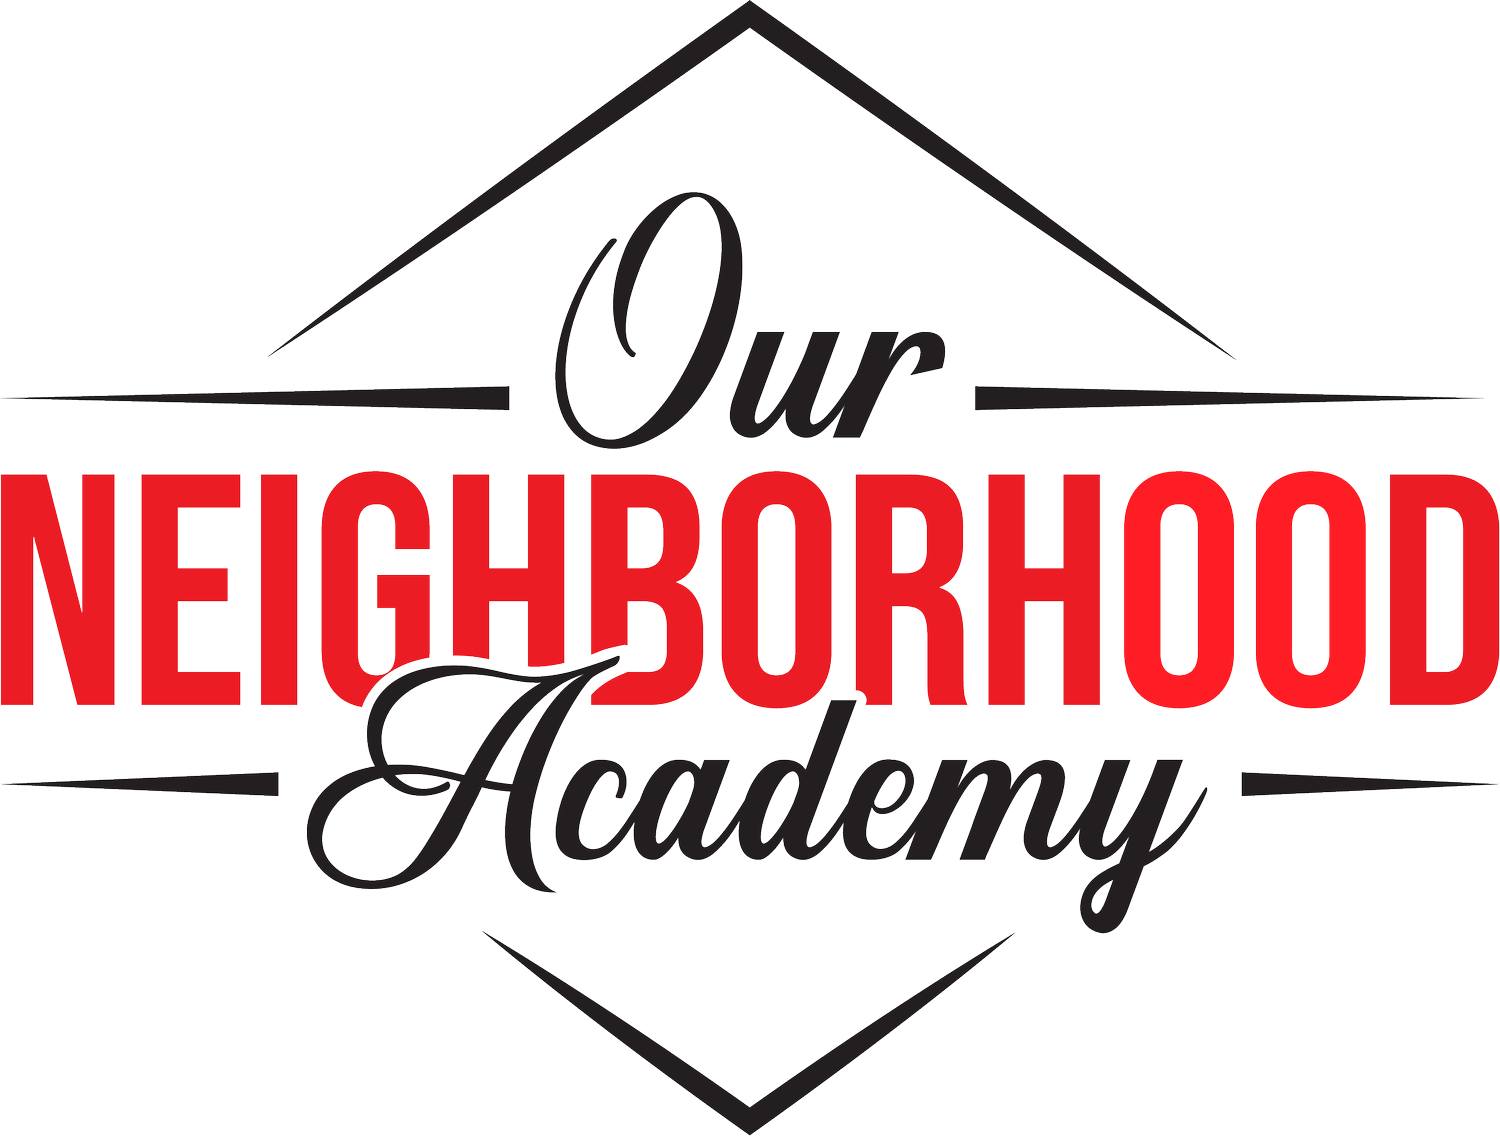 Our Neighborhood Academy